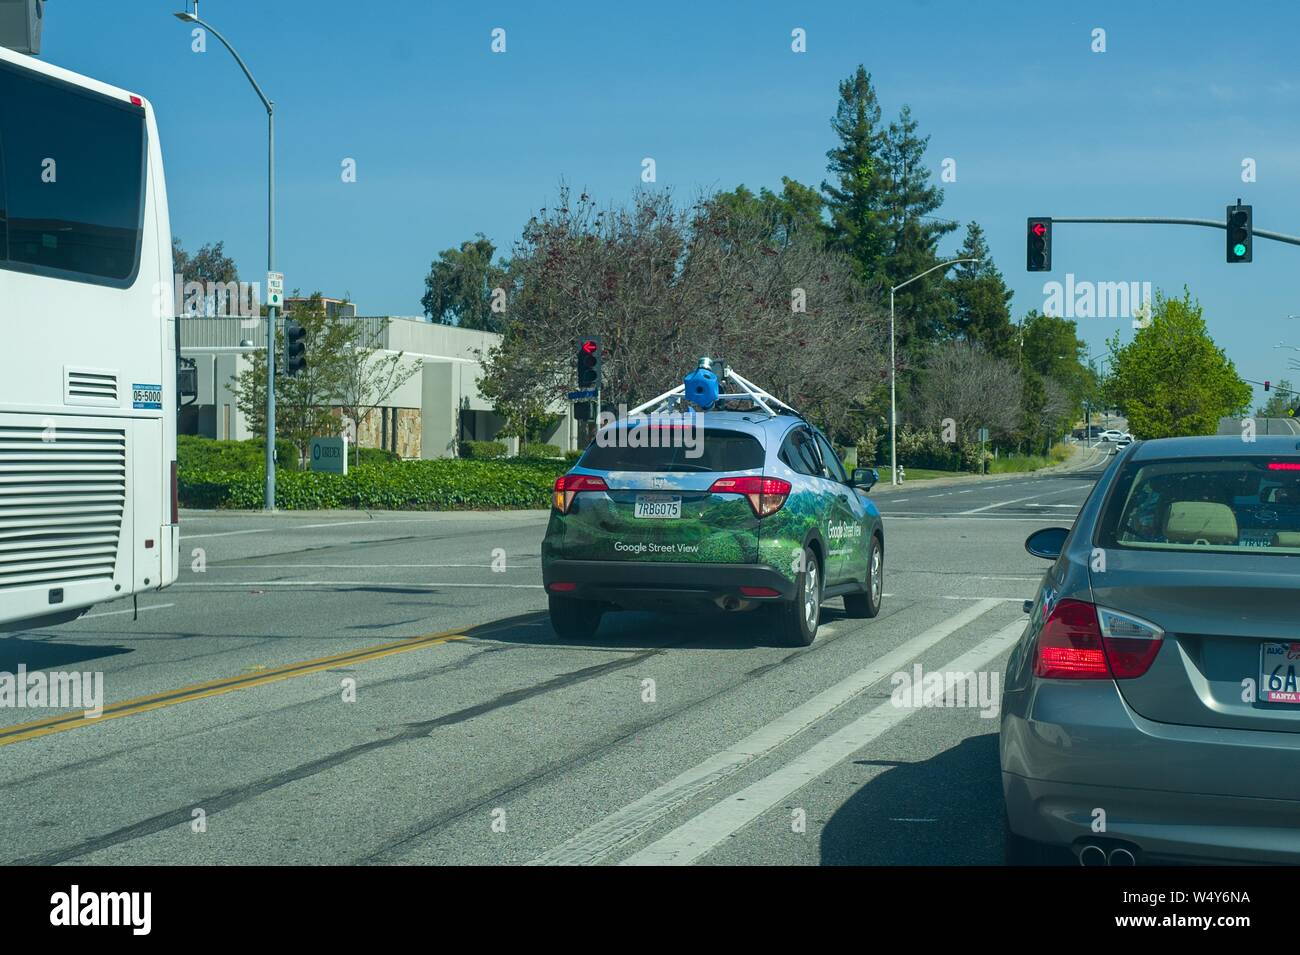 Google Street View veicolo con apparecchiature per la registrazione di immagini a 360 gradi per il Google Maps piattaforma, guidando lungo una strada di Silicon Valley, Mountain View, California, 3 maggio 2019. () Foto Stock